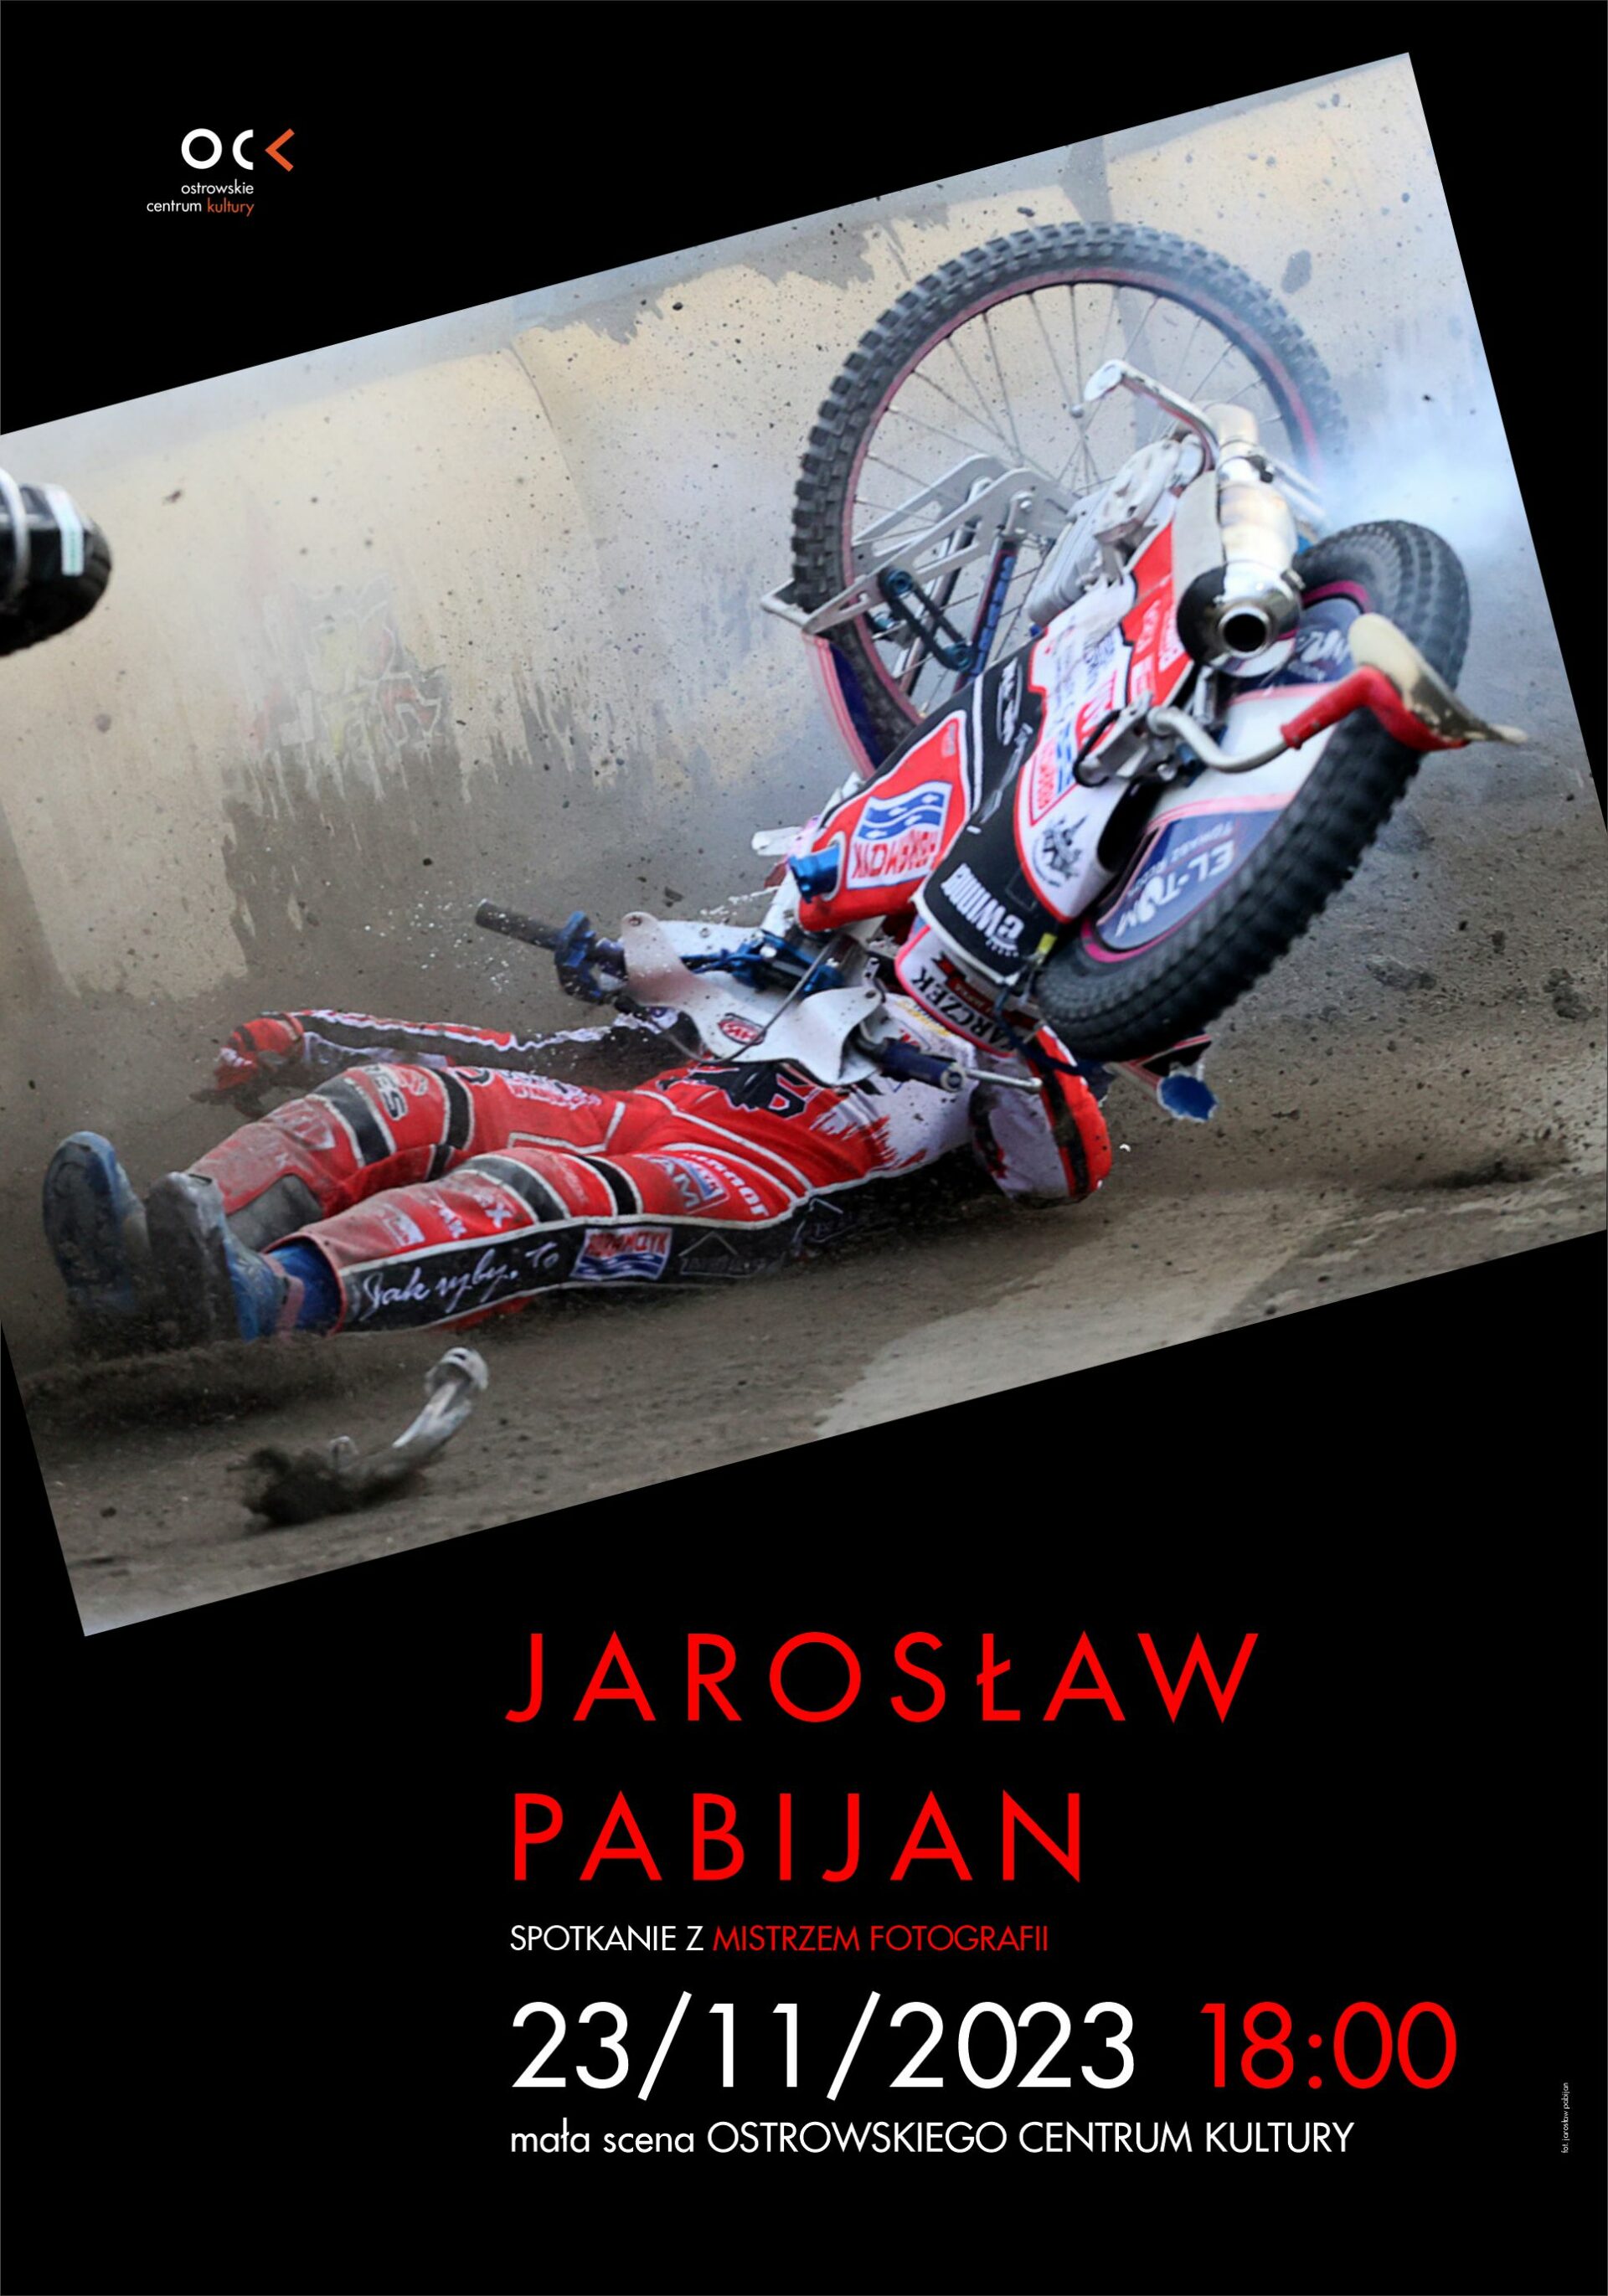 Jarosław Pabijan | Spotkanie z mistrzem fotografii